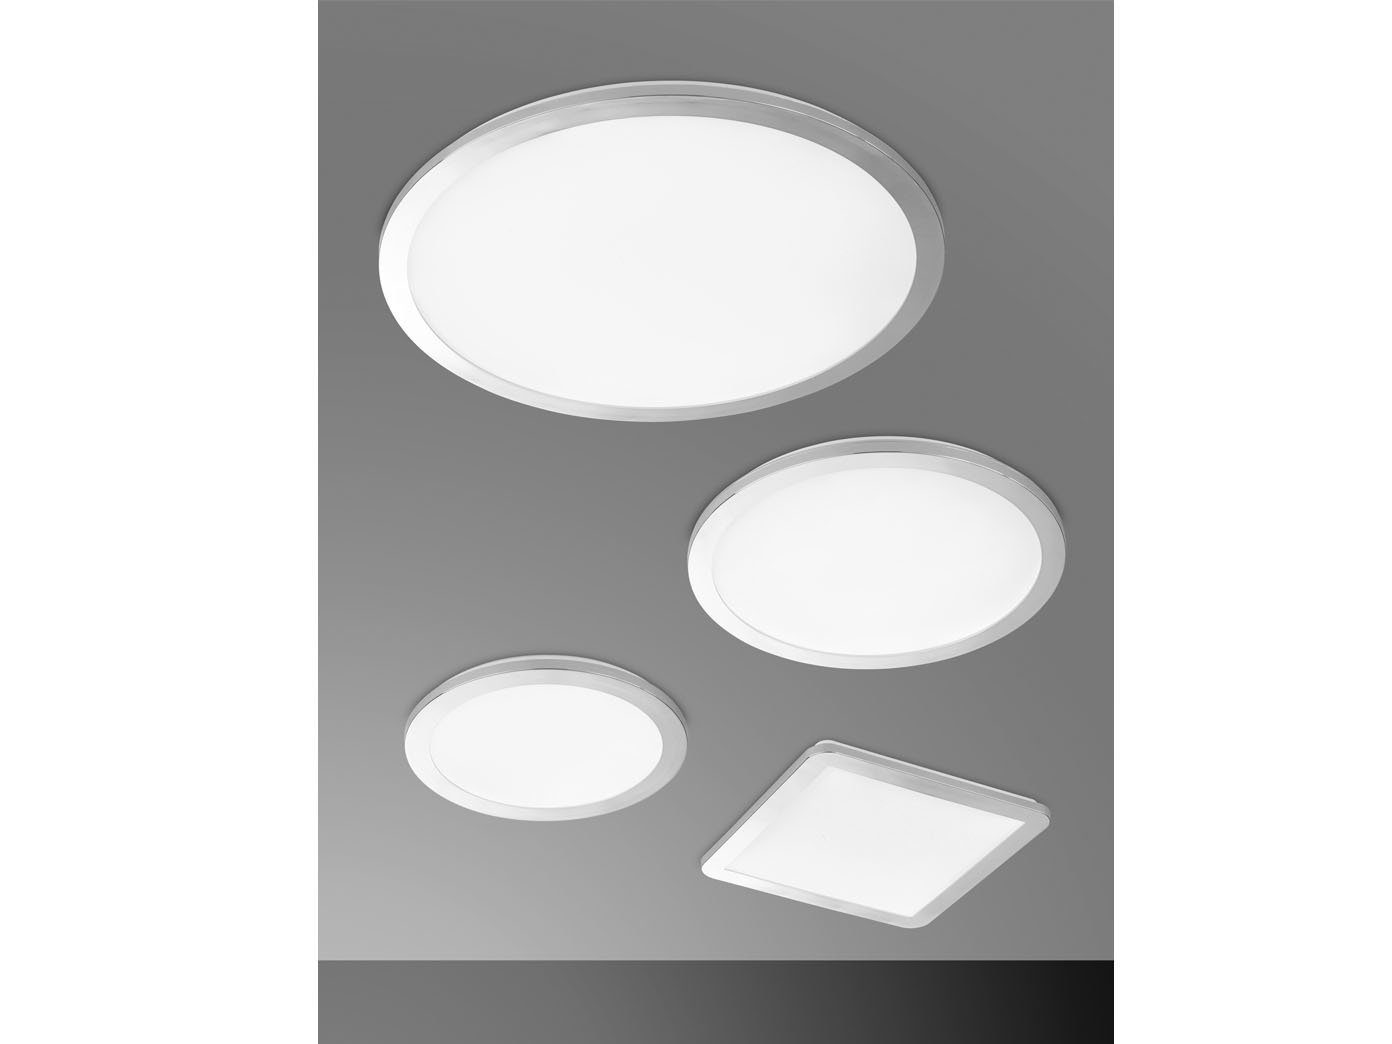 HONSEL 30x30cm Grau Warmweiß, FISCHER & IP Badezimmerlampen Deckenleuchte, fest vier-eckig, 44 SET Decke LED integriert, 2er LED flach Dimmfunktion, 3cm